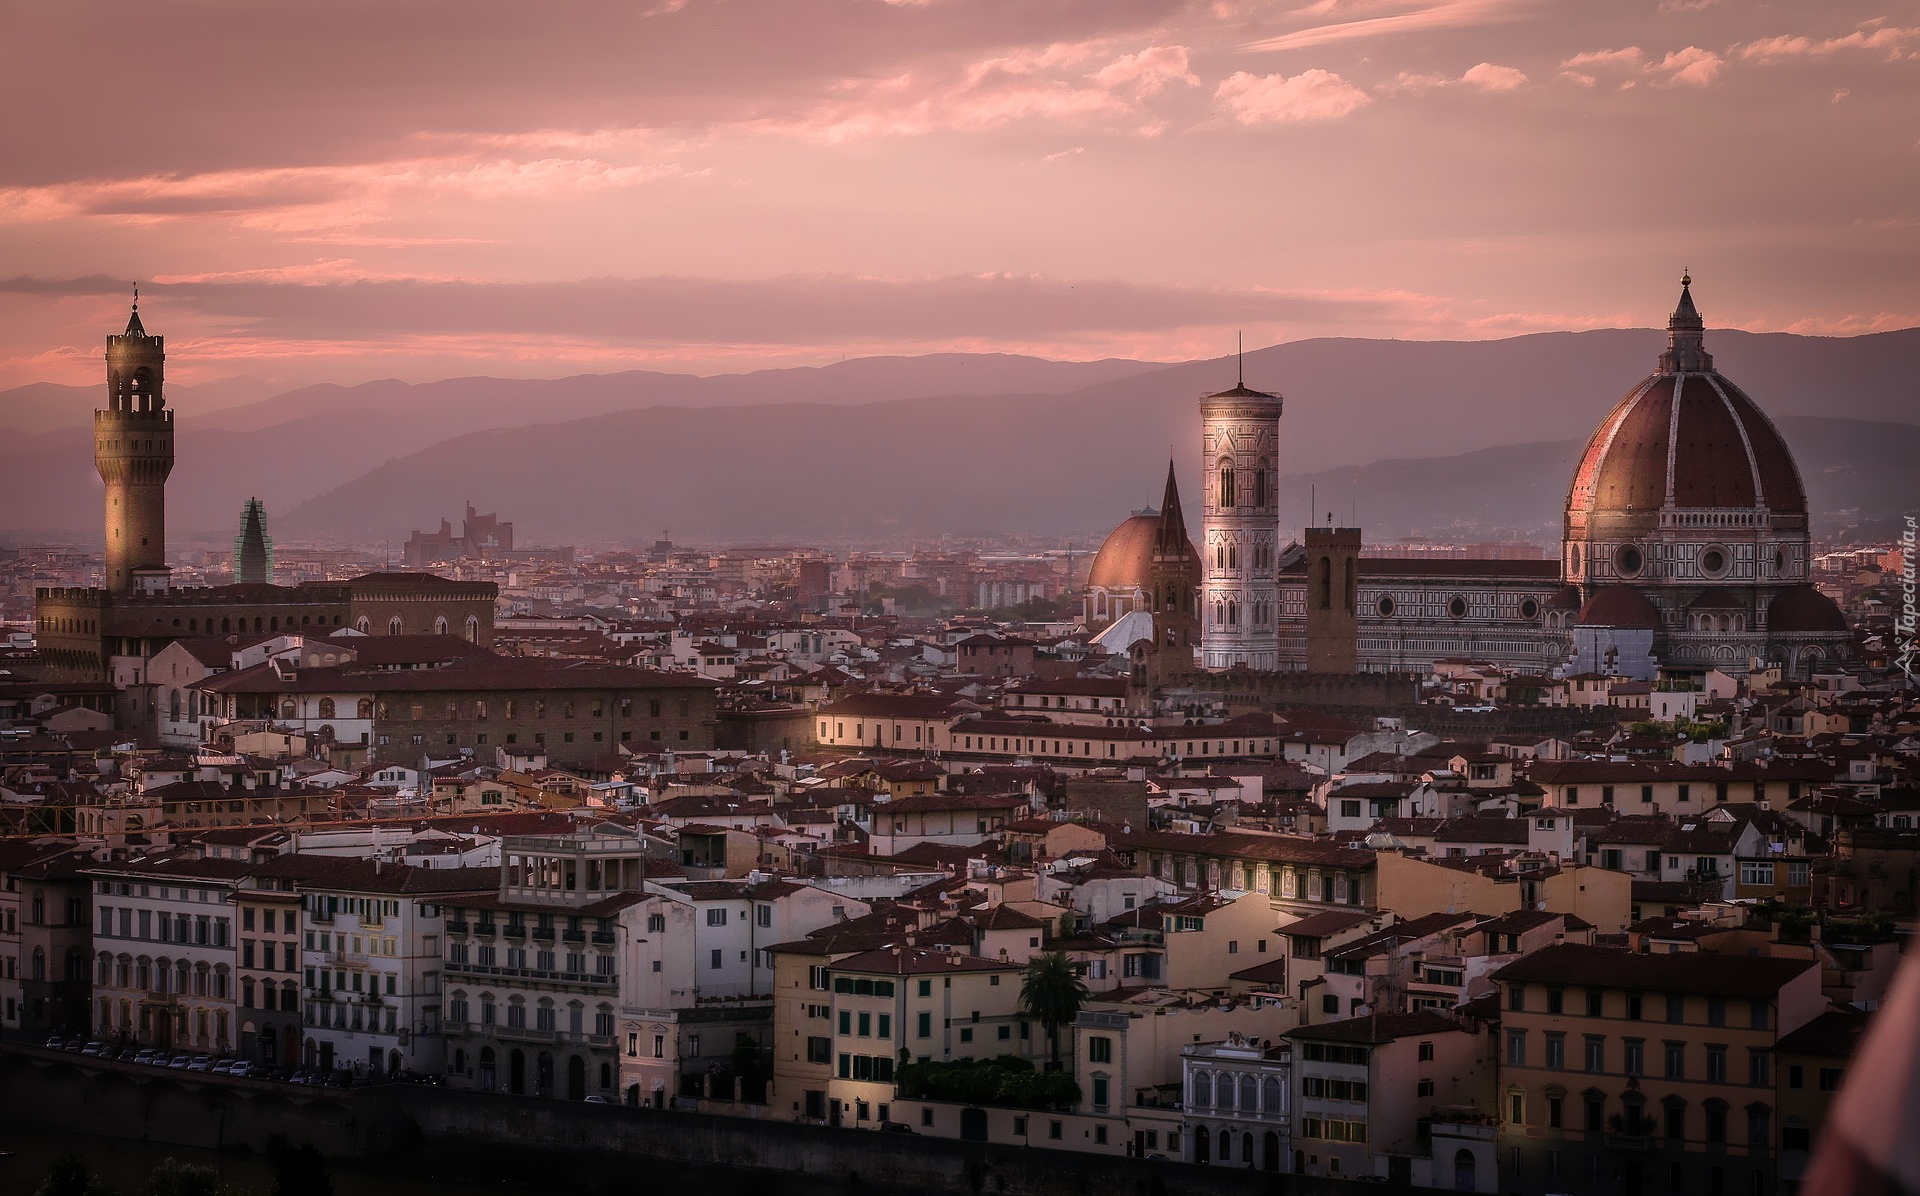 Miasto, Florencja, Domy, Kopuła, Santa Maria del Fiore, Katedra Matki Boskiej Kwietnej, Dzwonnica Giotta, Zachód słońca, Włochy